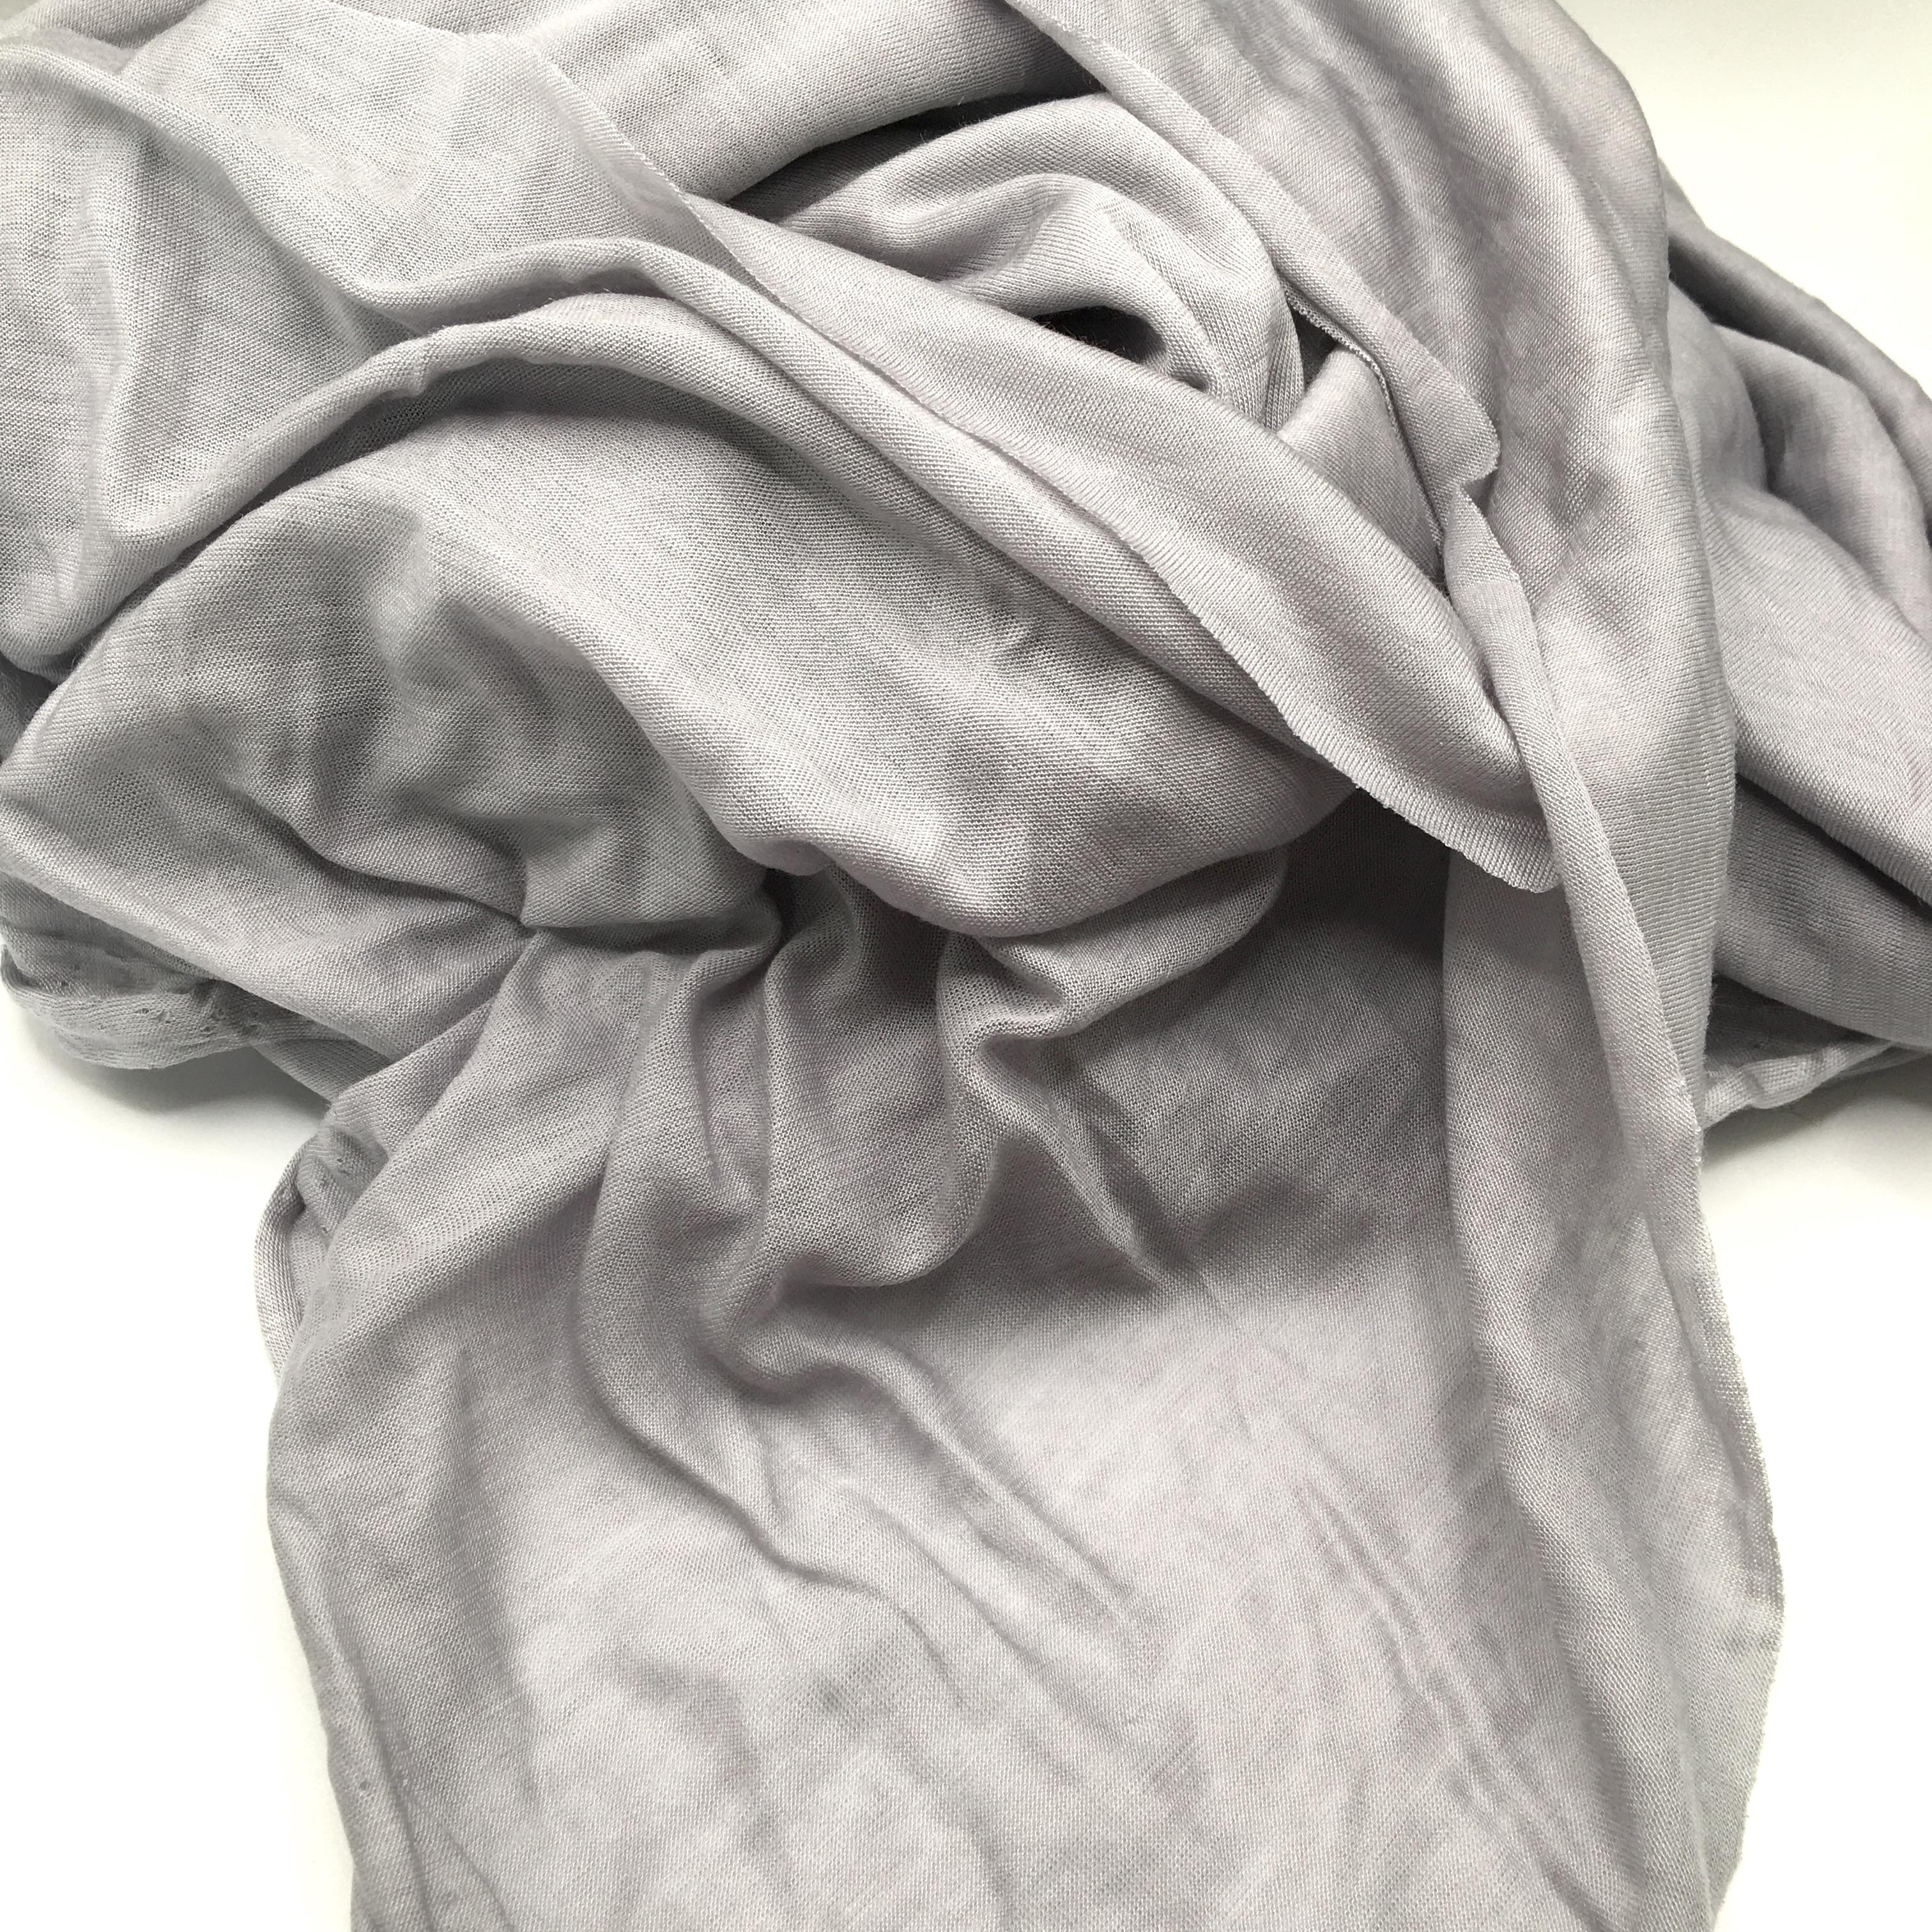 Plain Viscose Elastane Stretch Jersey Fabric 150 cm wide per metre